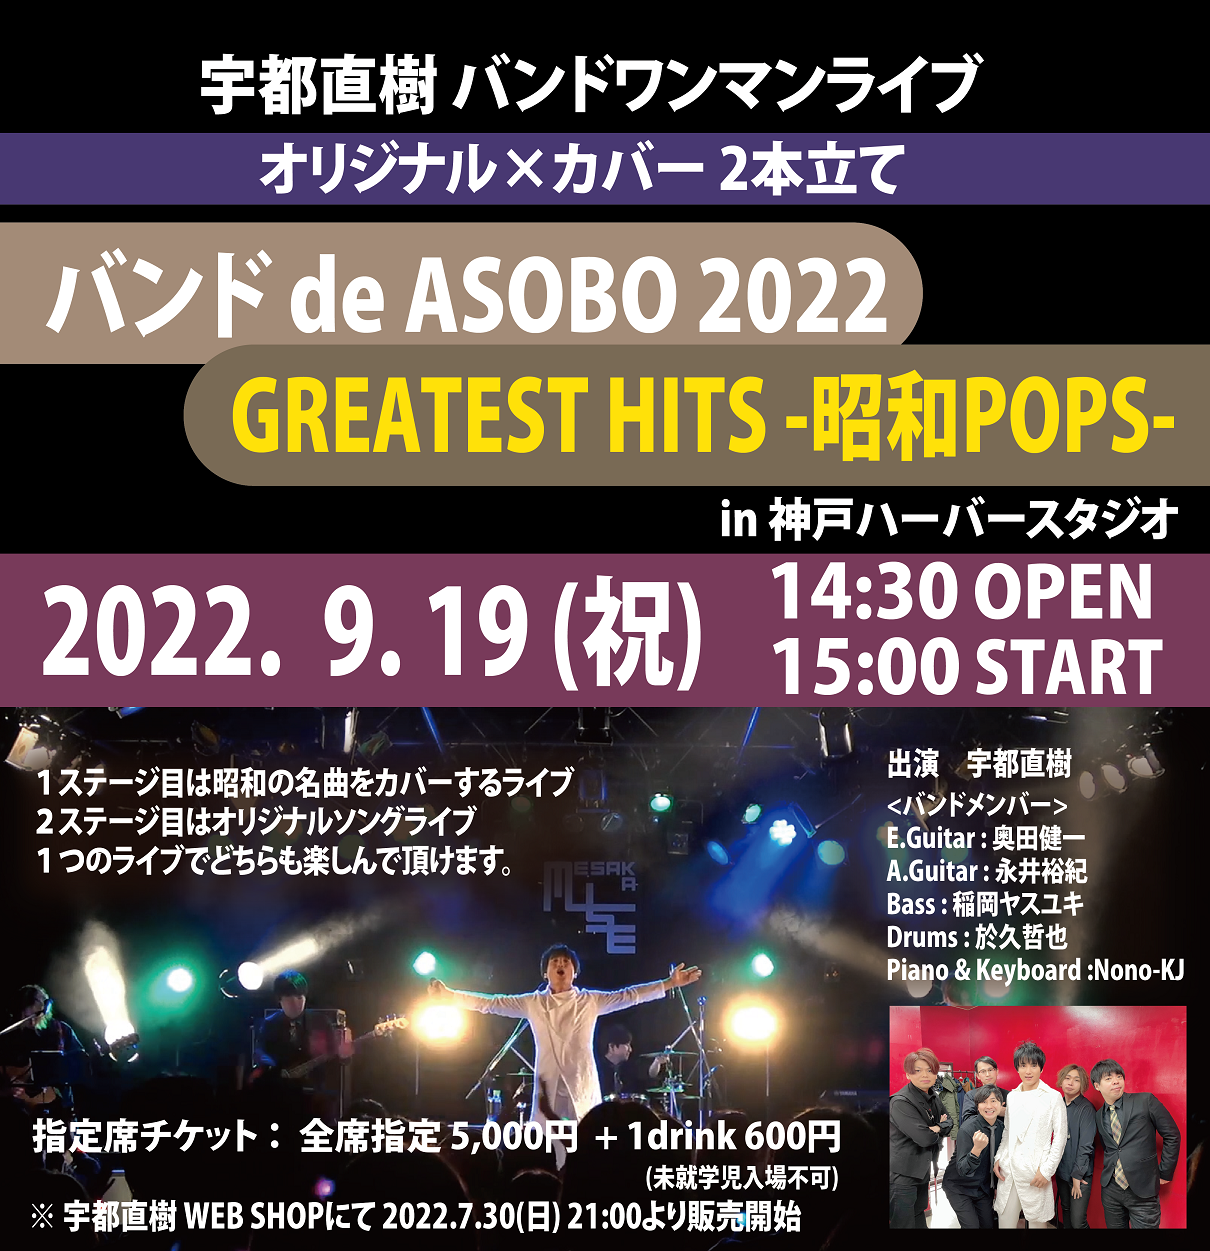 宇都直樹フルバンドワンマンライブ 『バンド de ASOBO 2022 × GREATEST HITS -昭和POPS- 』